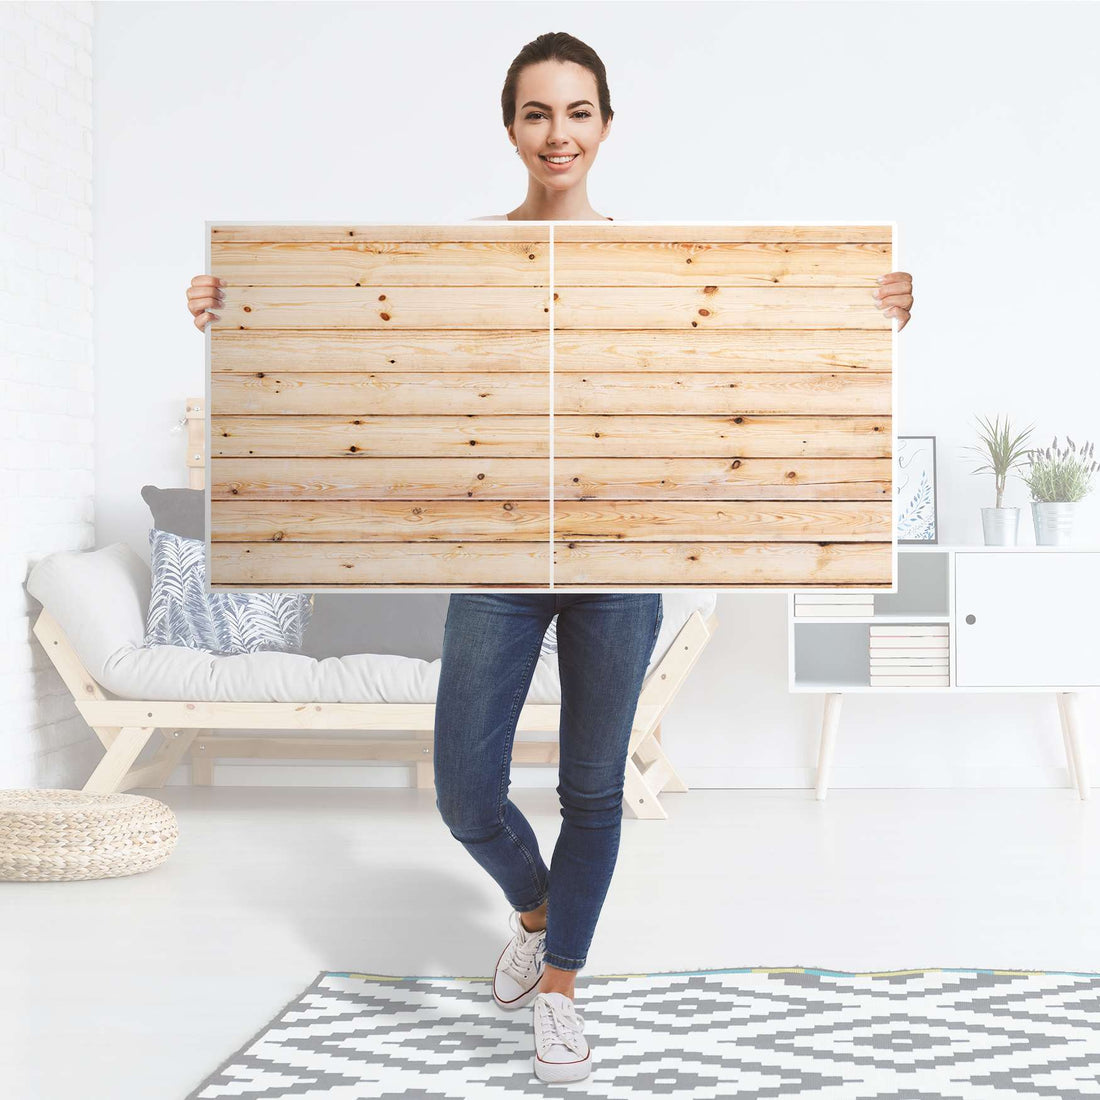 Folie für Möbel Bright Planks - IKEA Besta Regal Quer 2 Türen - Folie